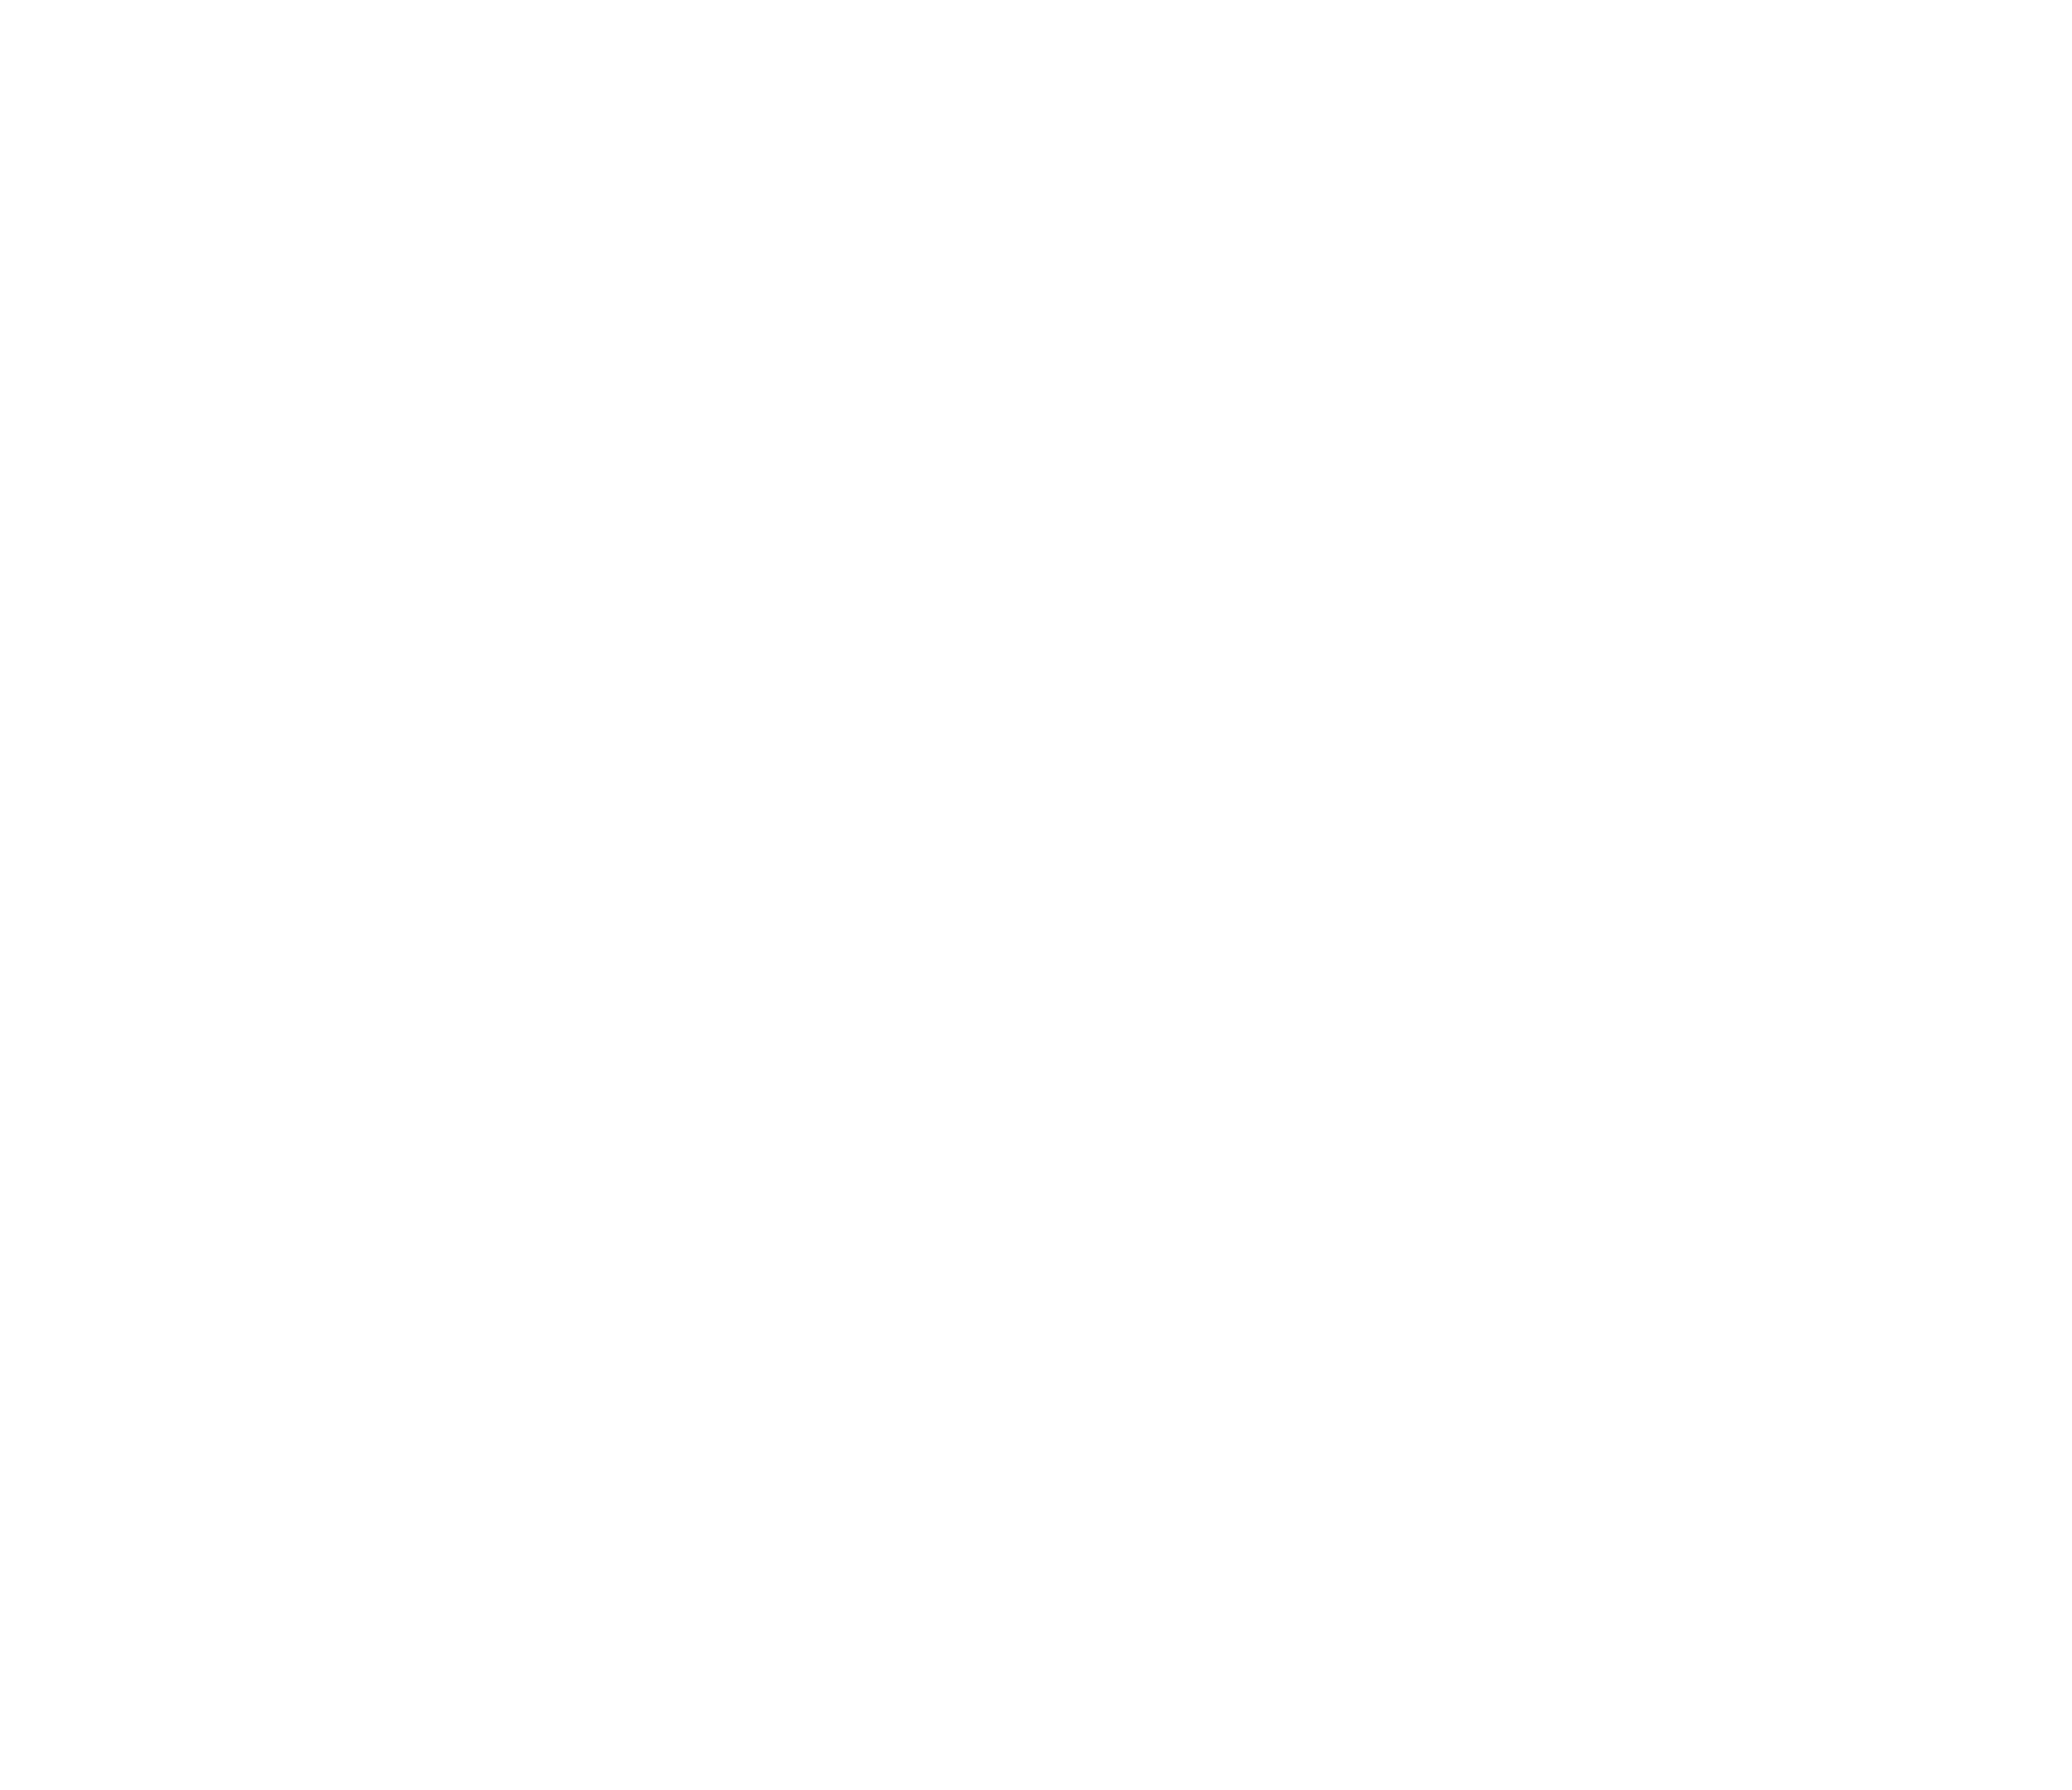 Delfino szkoła pływania